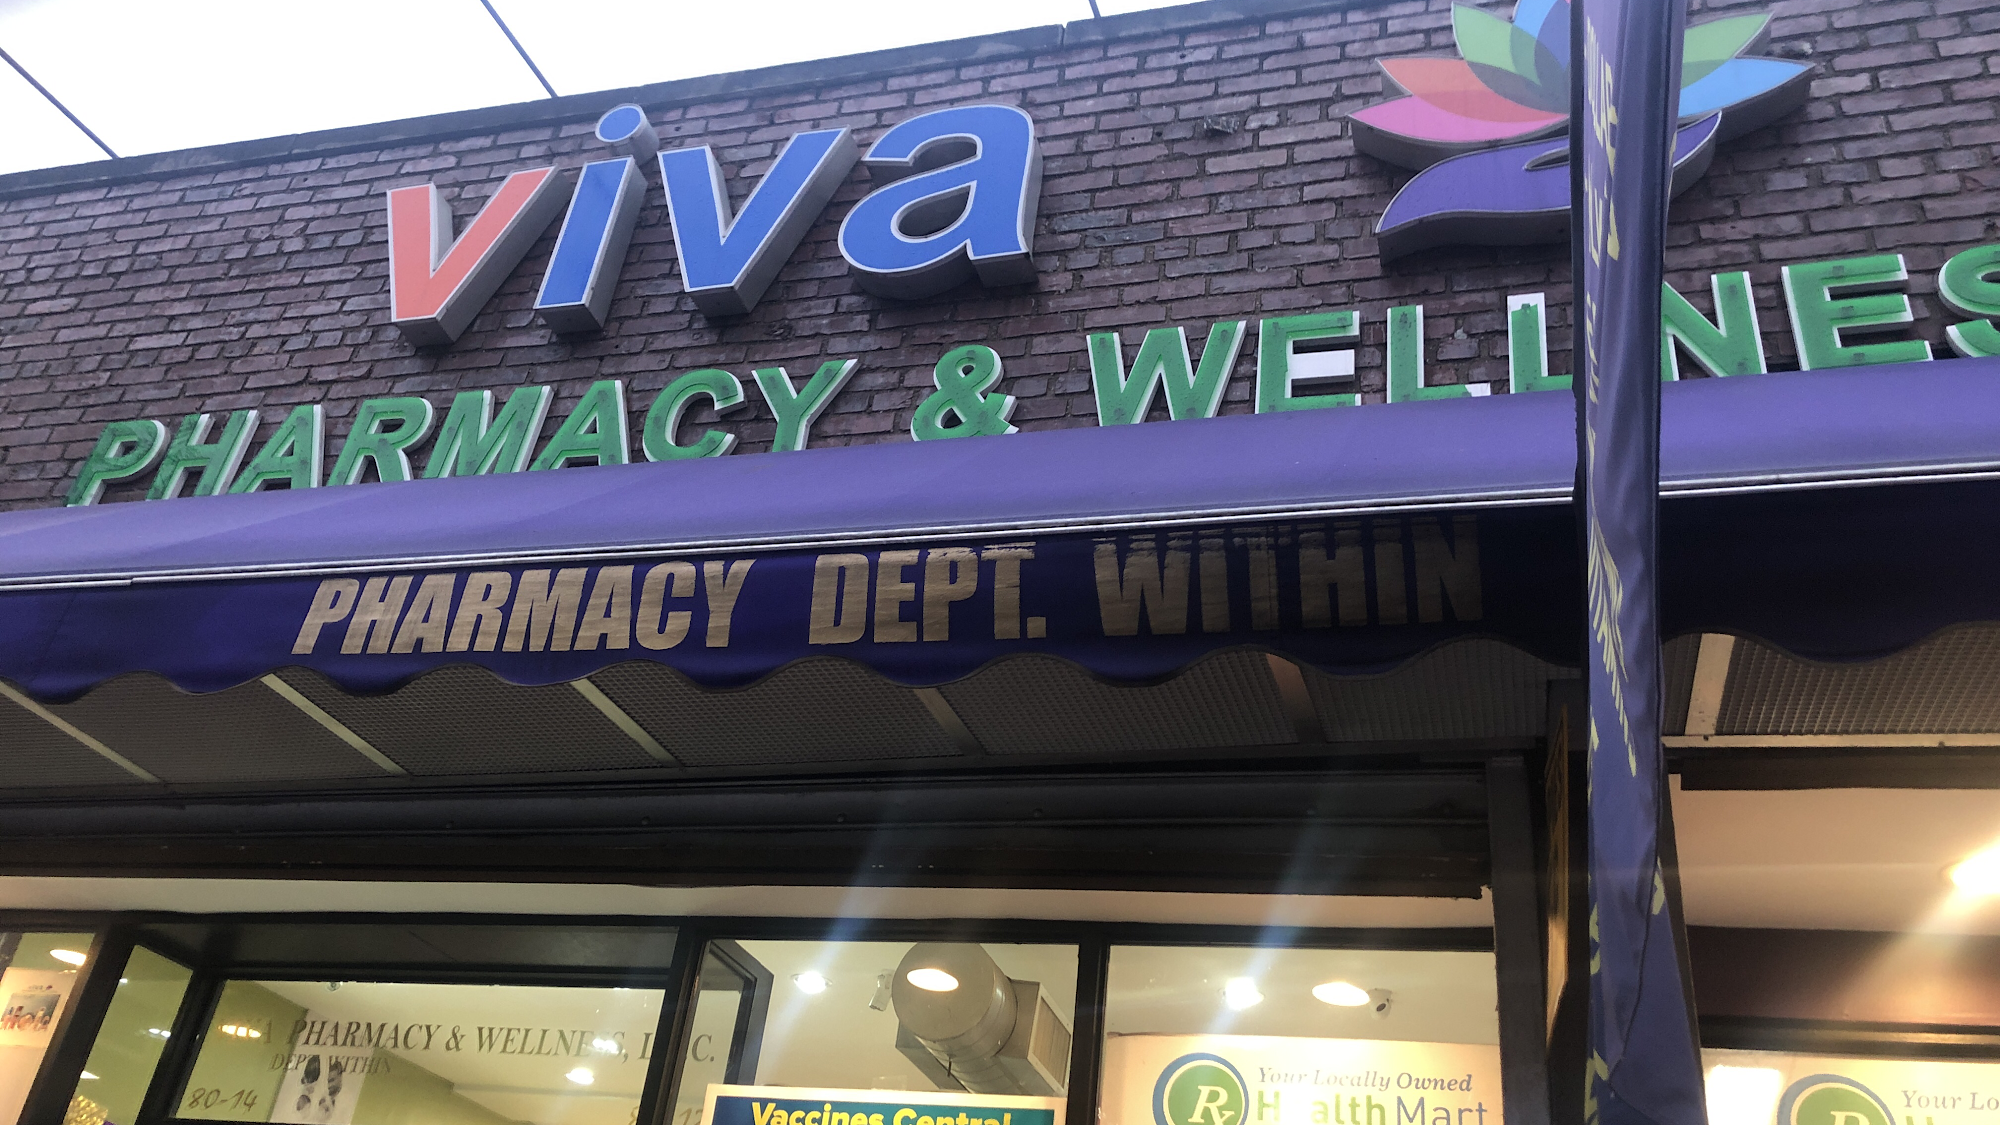 VIVA Pharmacy & Wellness